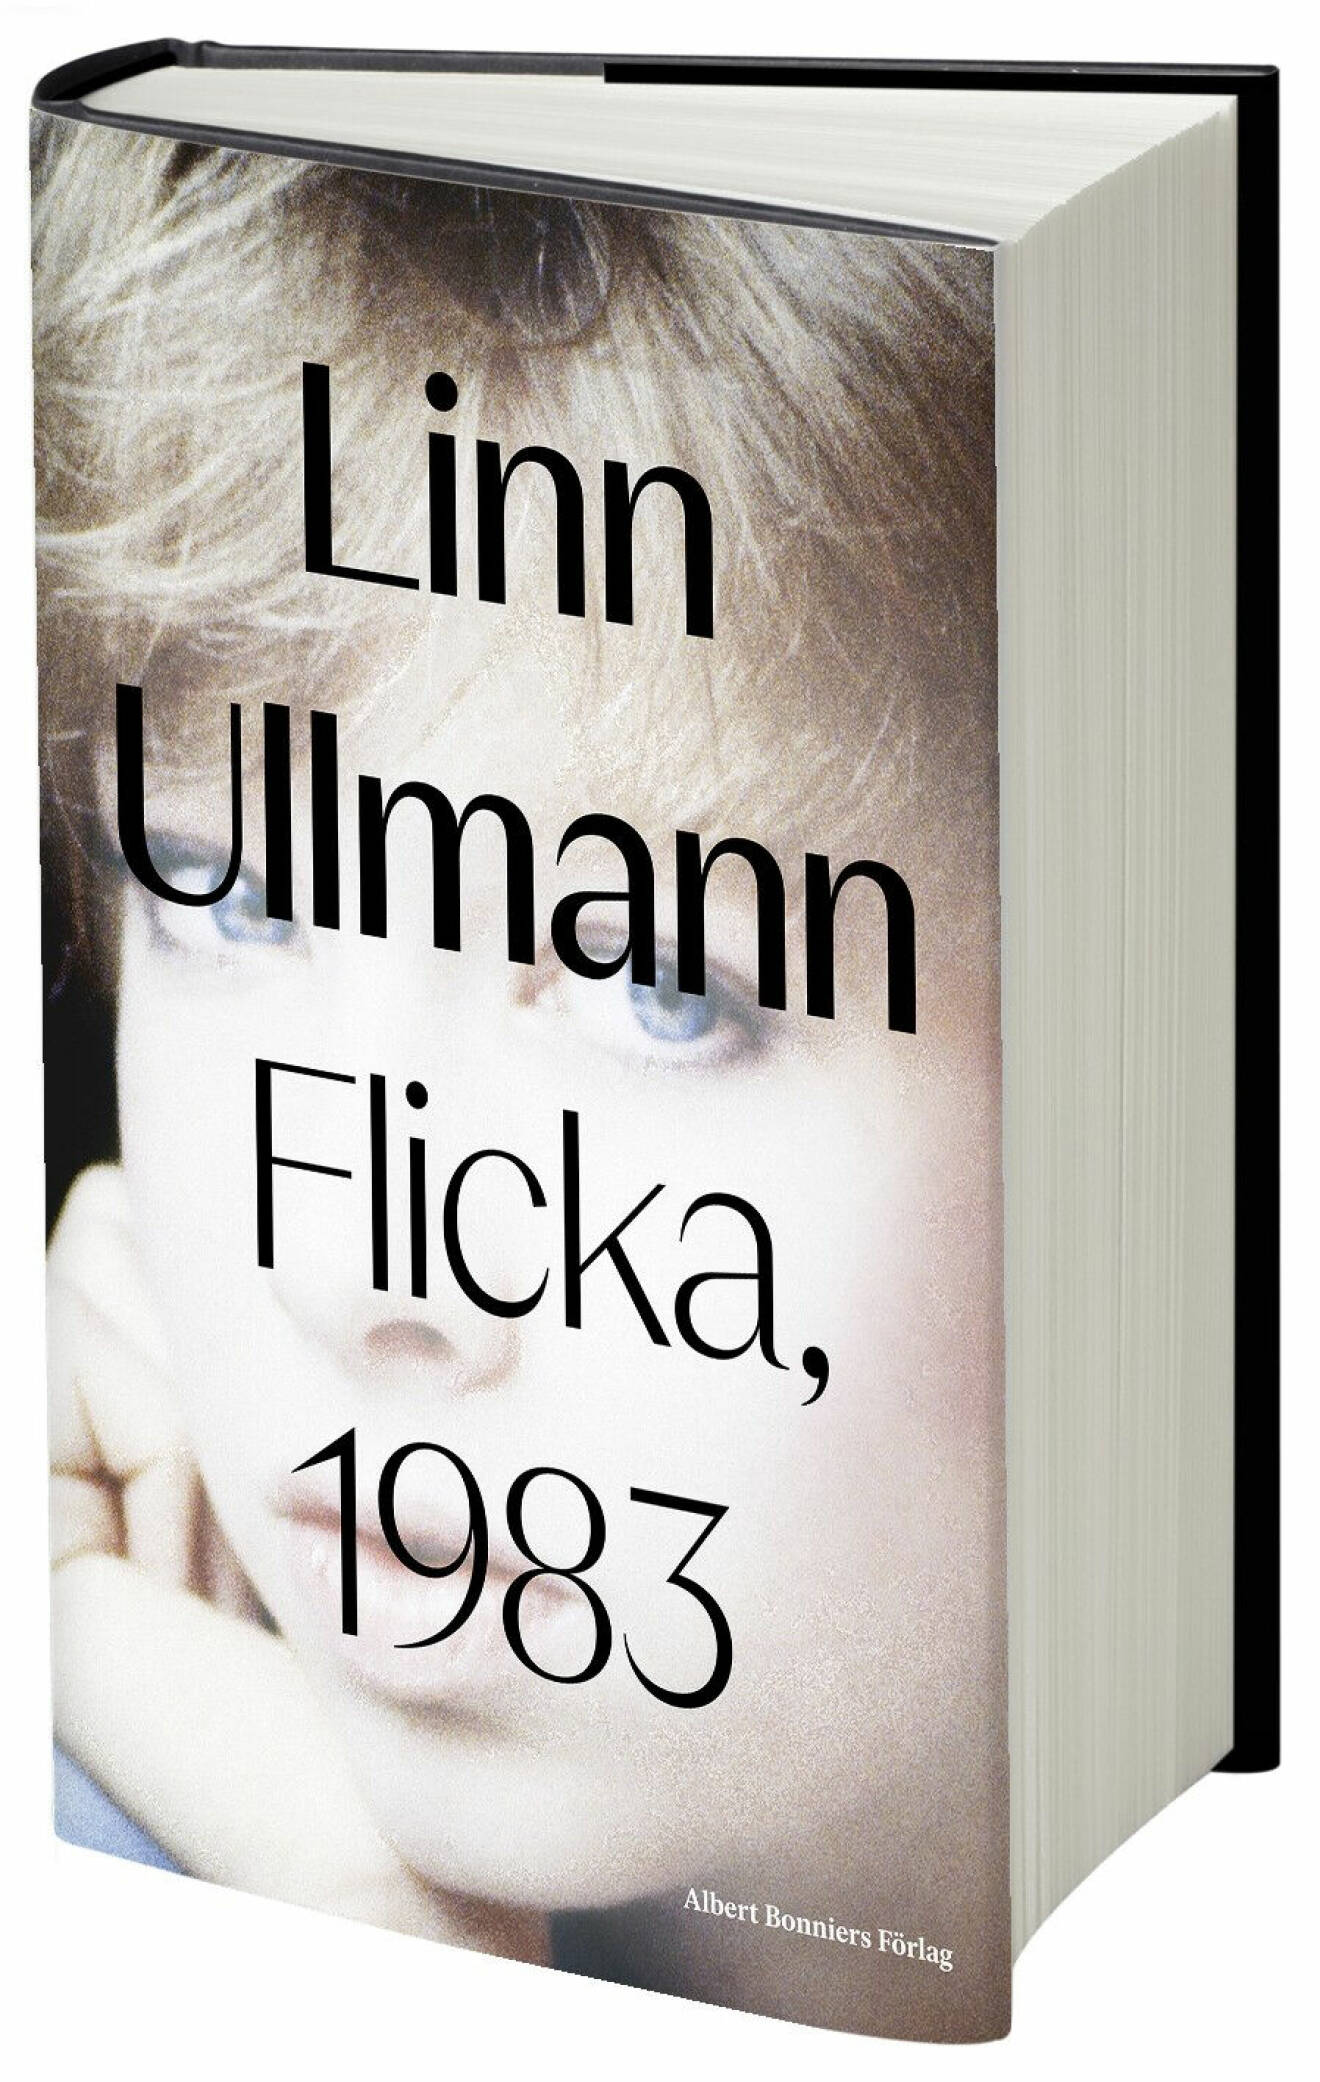 Linn Ullman Flicka, 1983